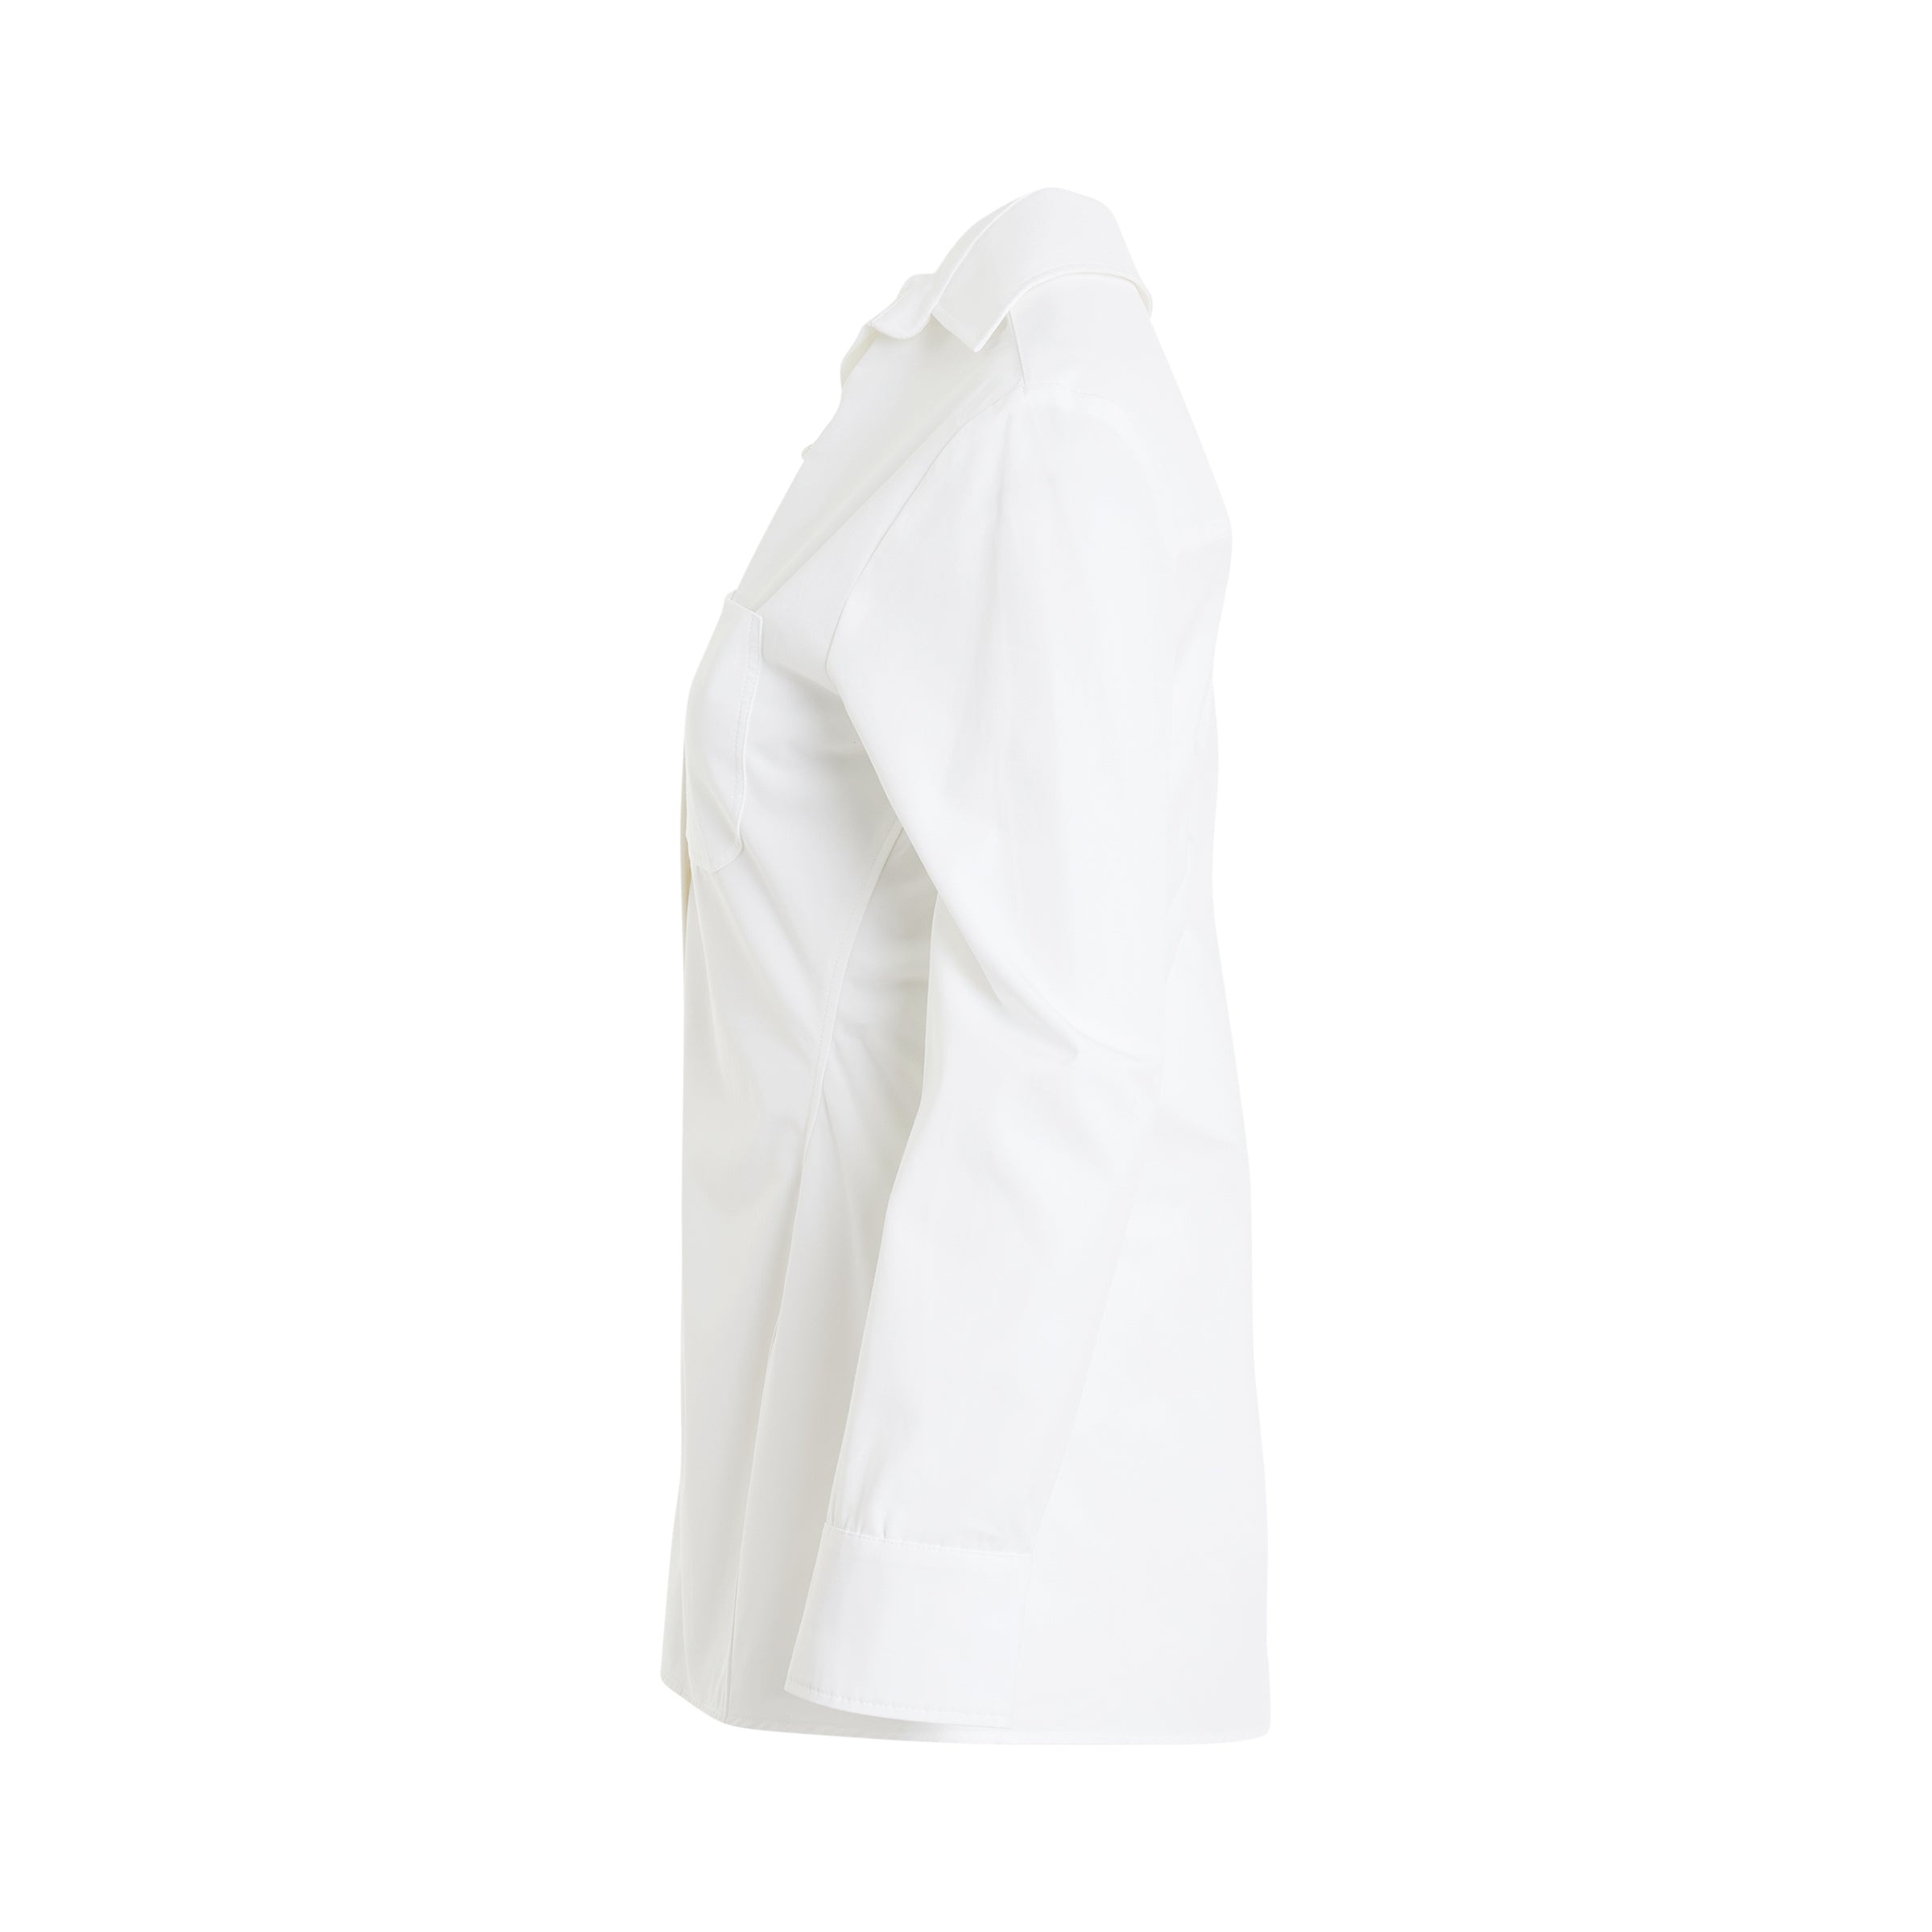 Pablo Asymmetric Shirt in White - 3